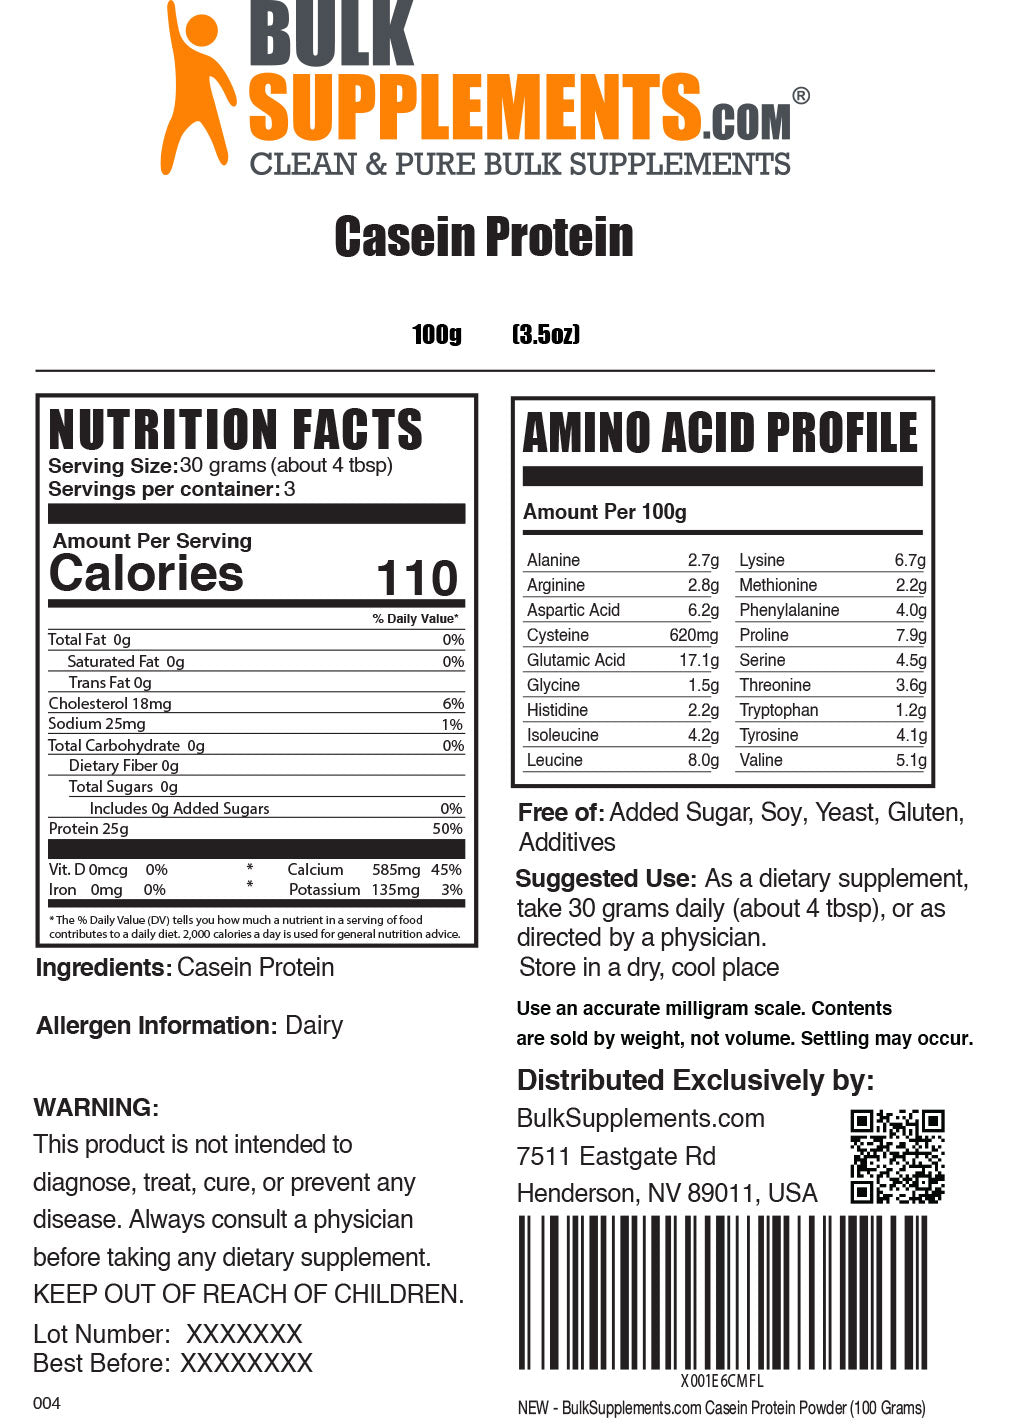 100g casein protein powder supplement facts label